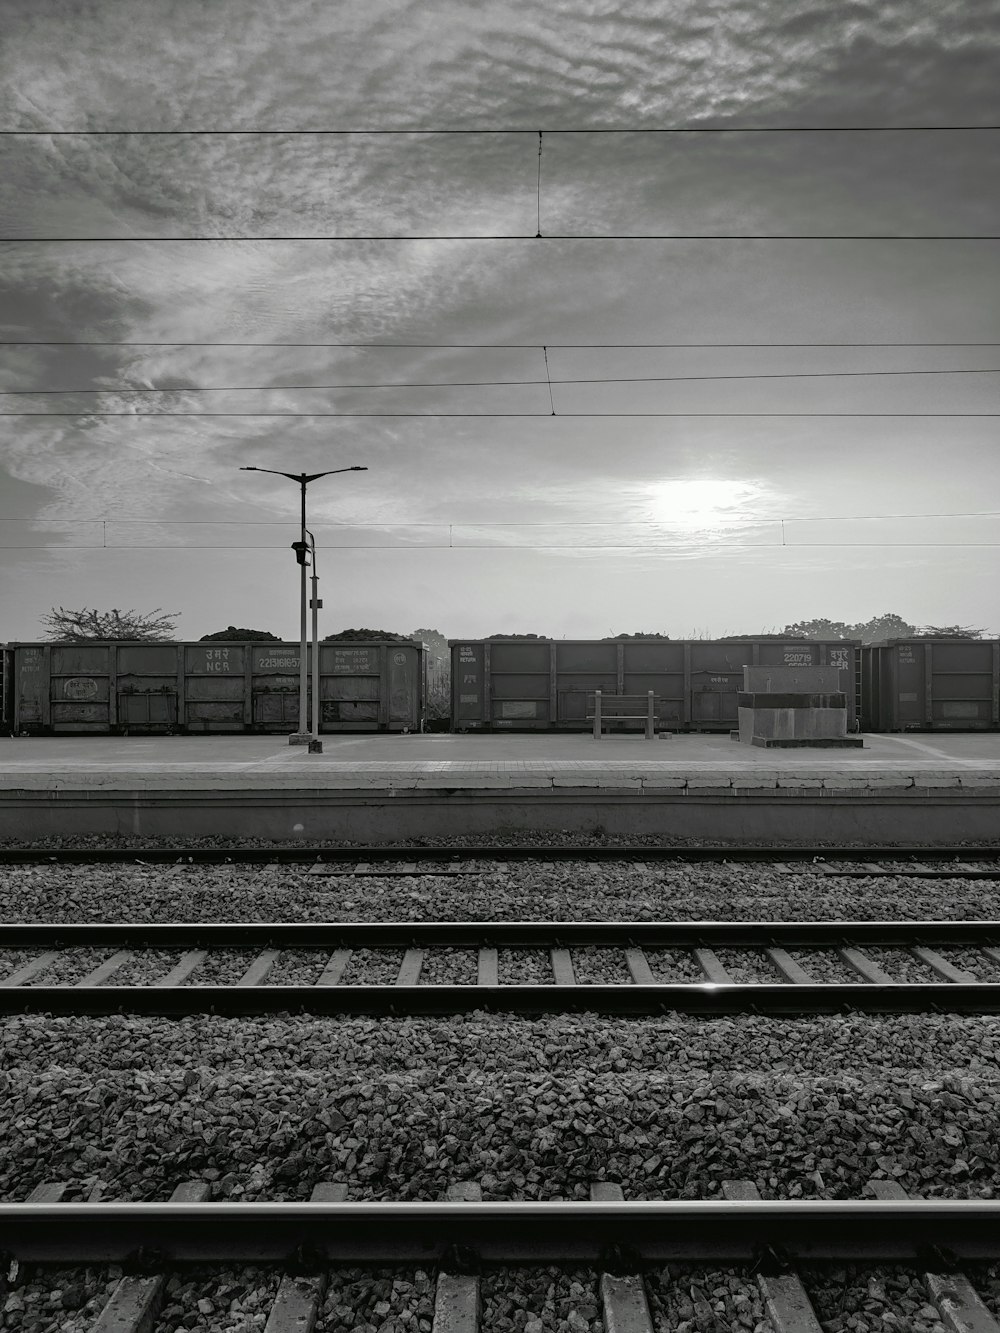 train tracks next to a building